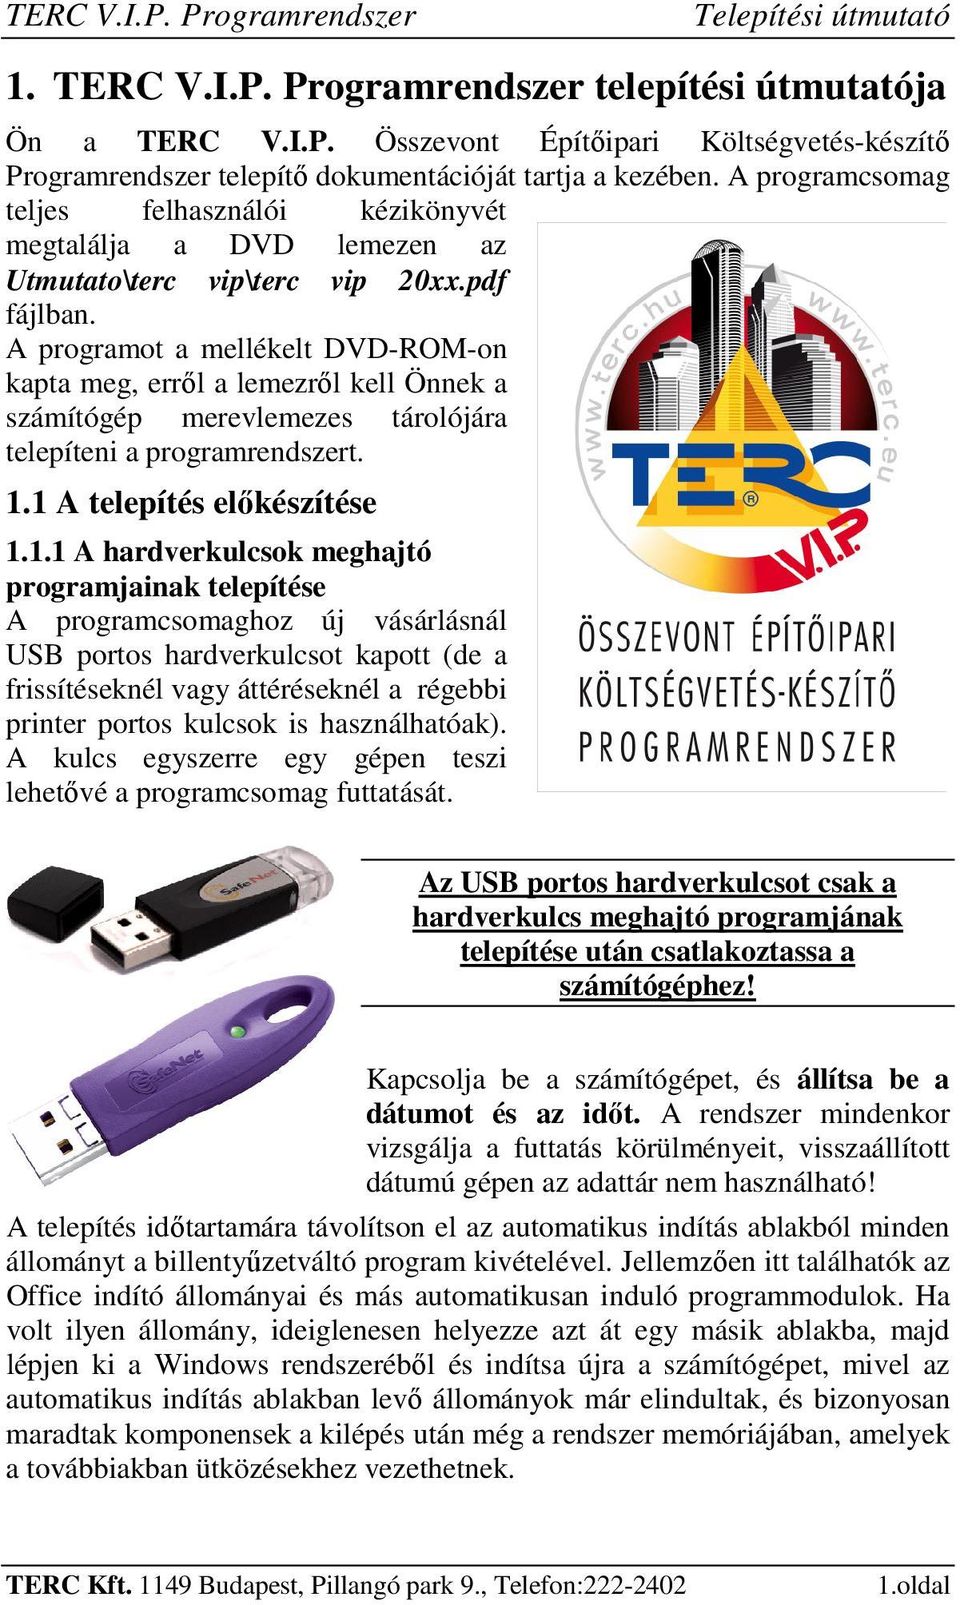 1. TERC V.I.P. Programrendszer telepítési útmutatója - PDF Free Download